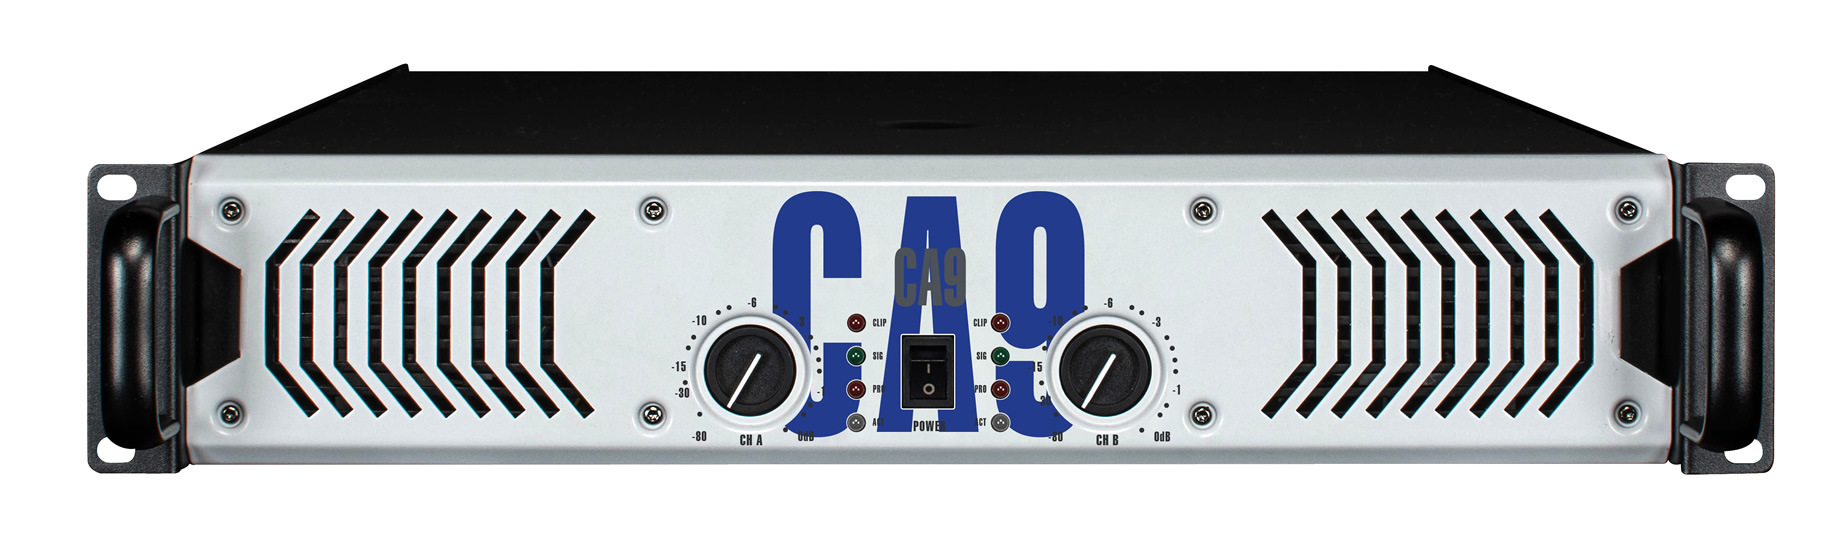 520X2 Watt Stable Amplifier